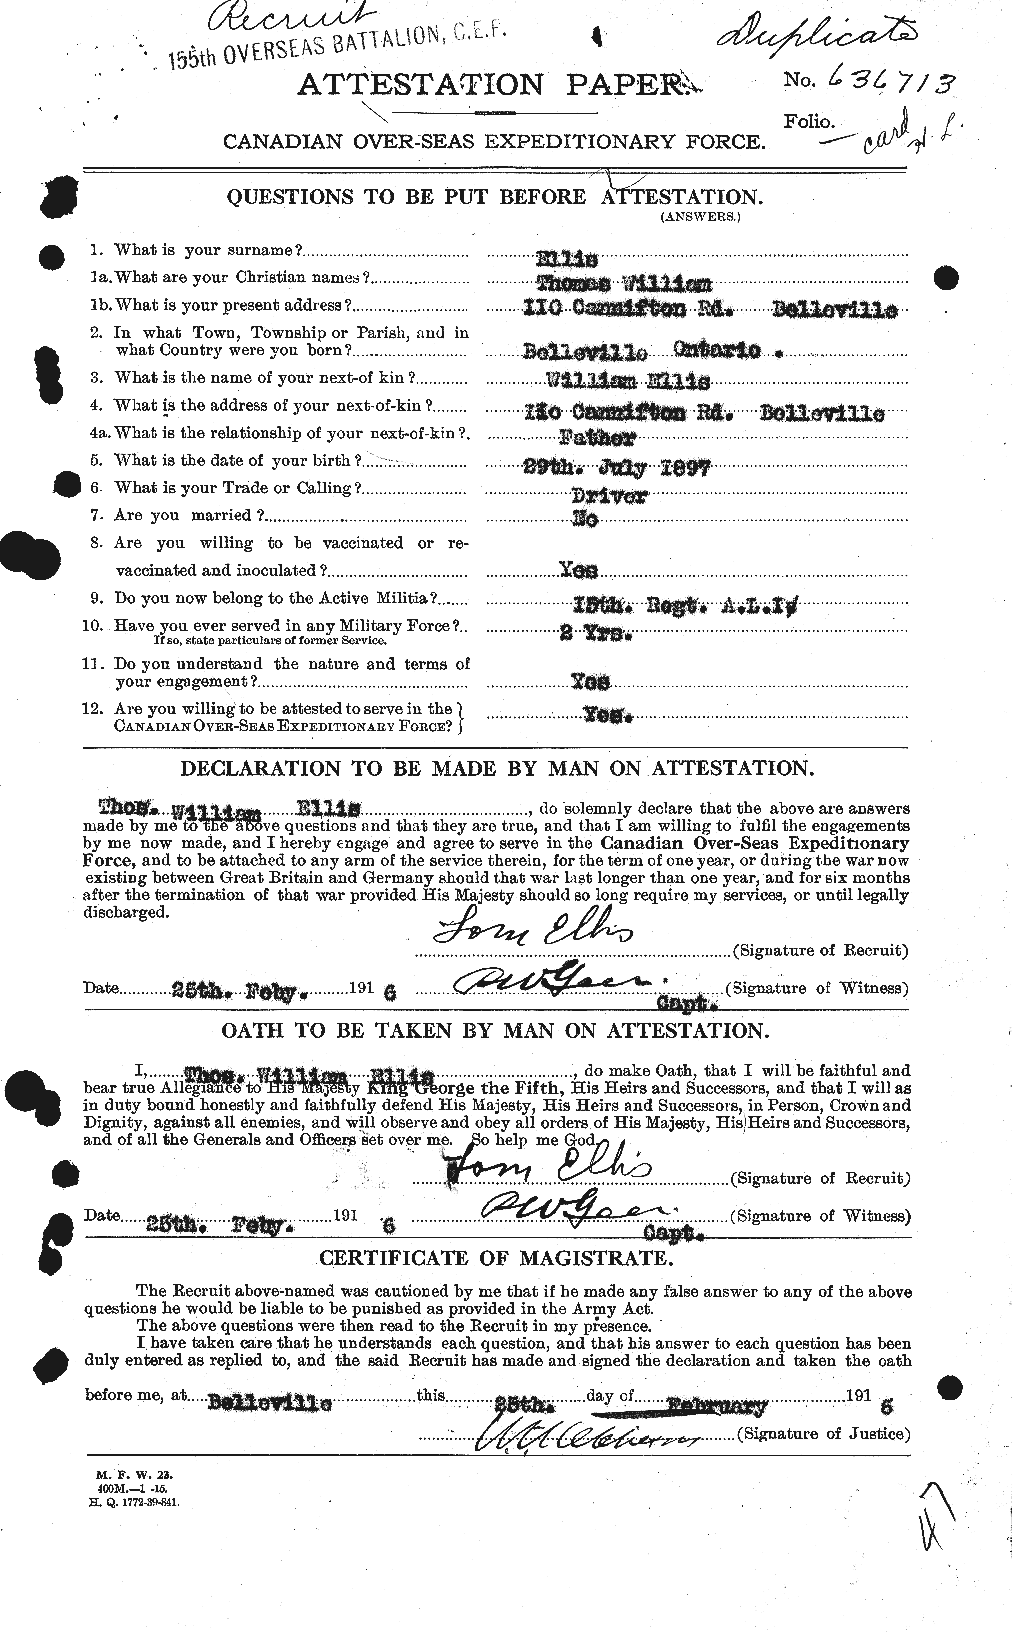 Dossiers du Personnel de la Première Guerre mondiale - CEC 313641a